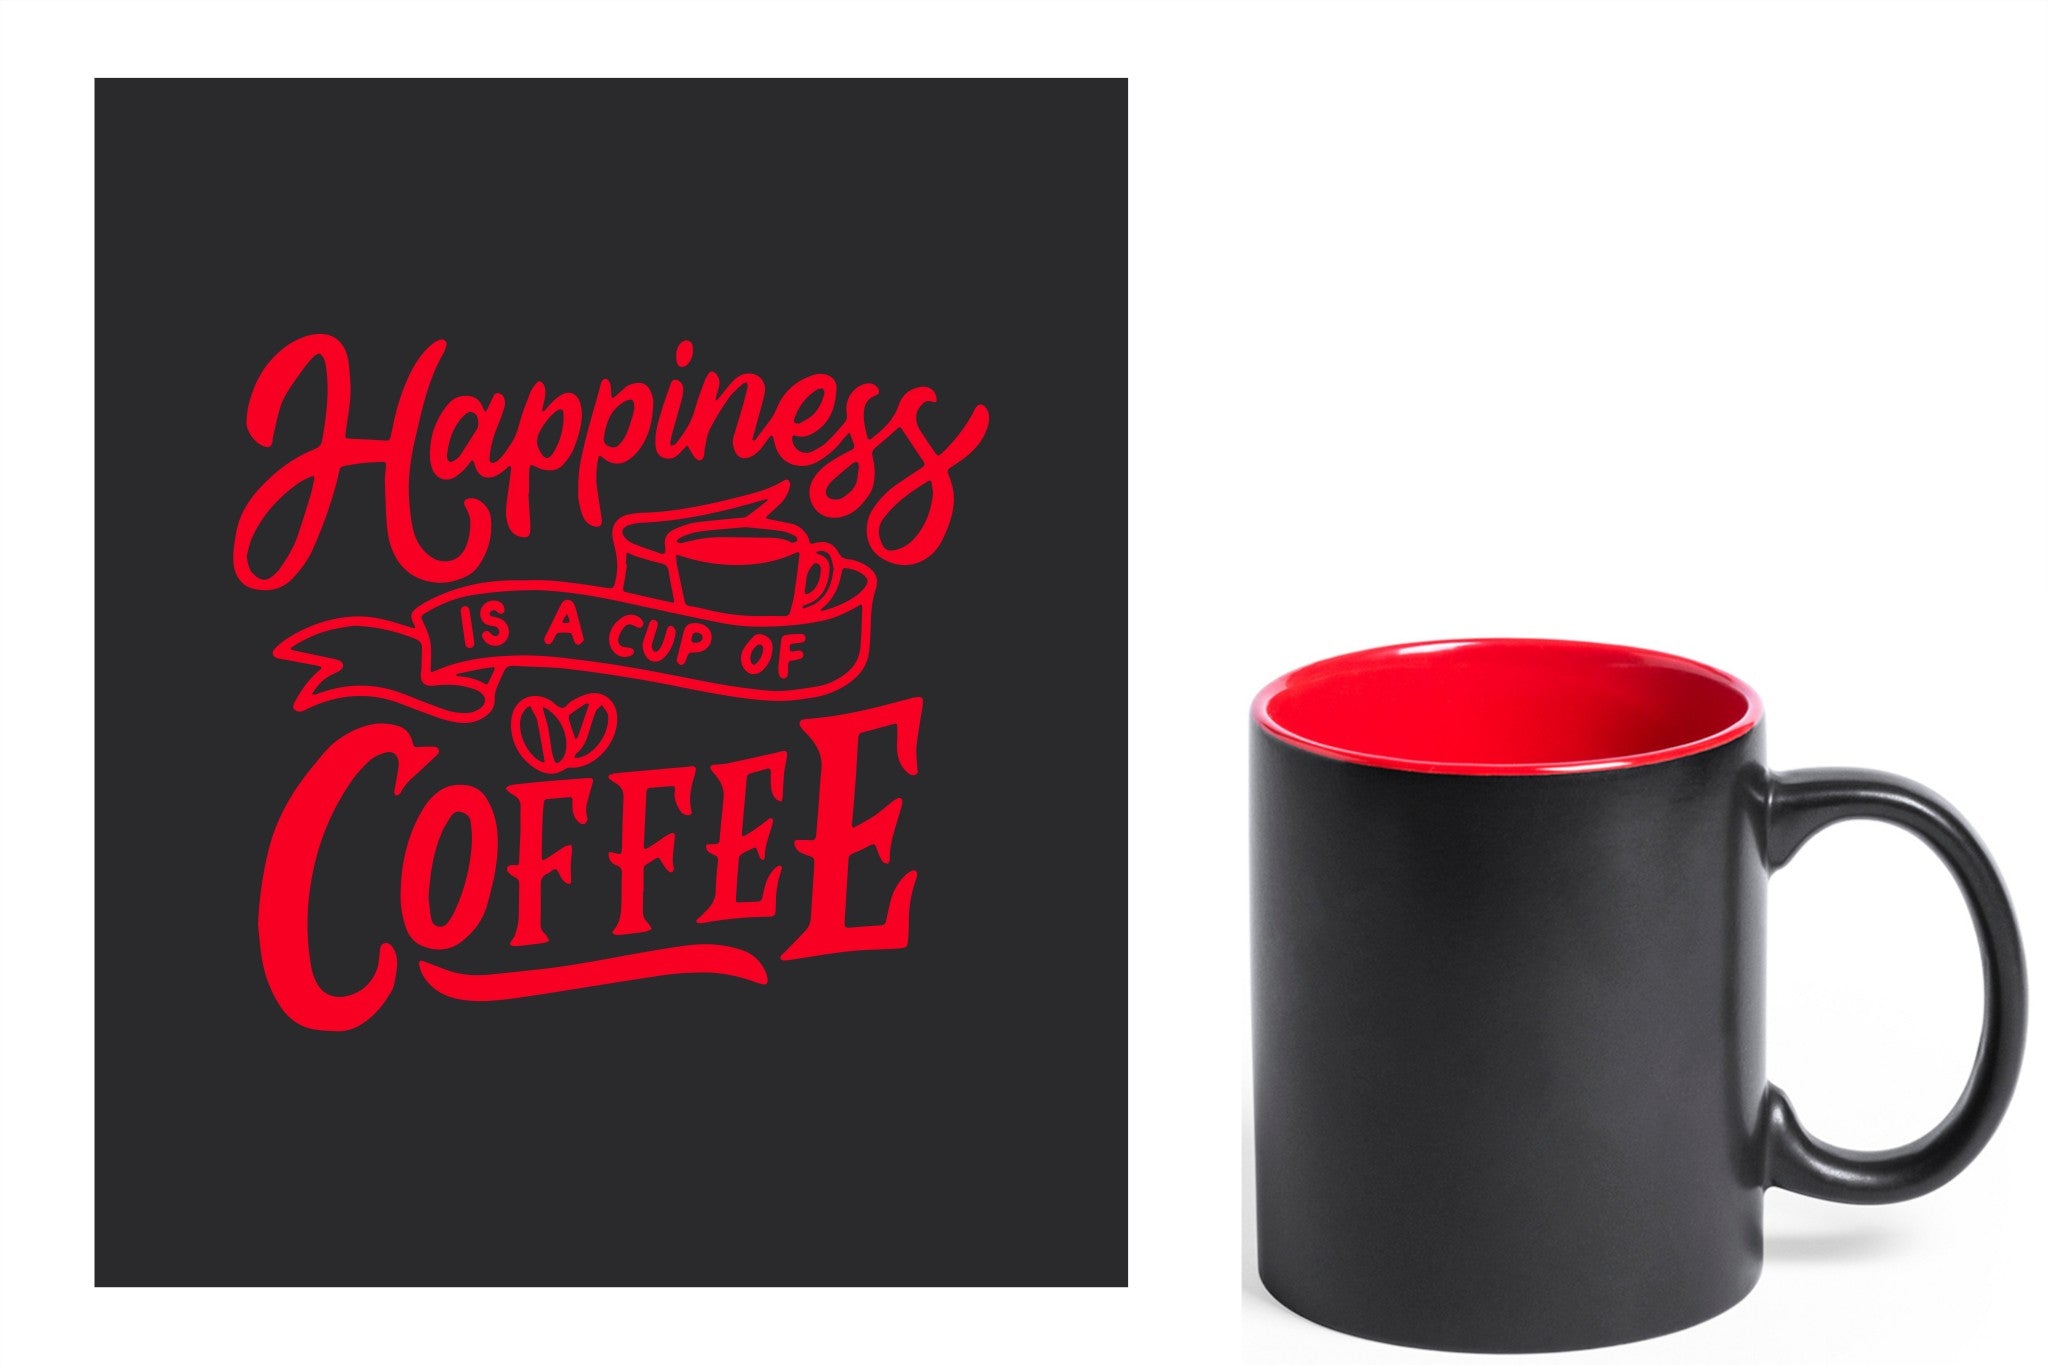 zwarte keramische mok met rode gravure  'Happiness is a cup of coffee'.